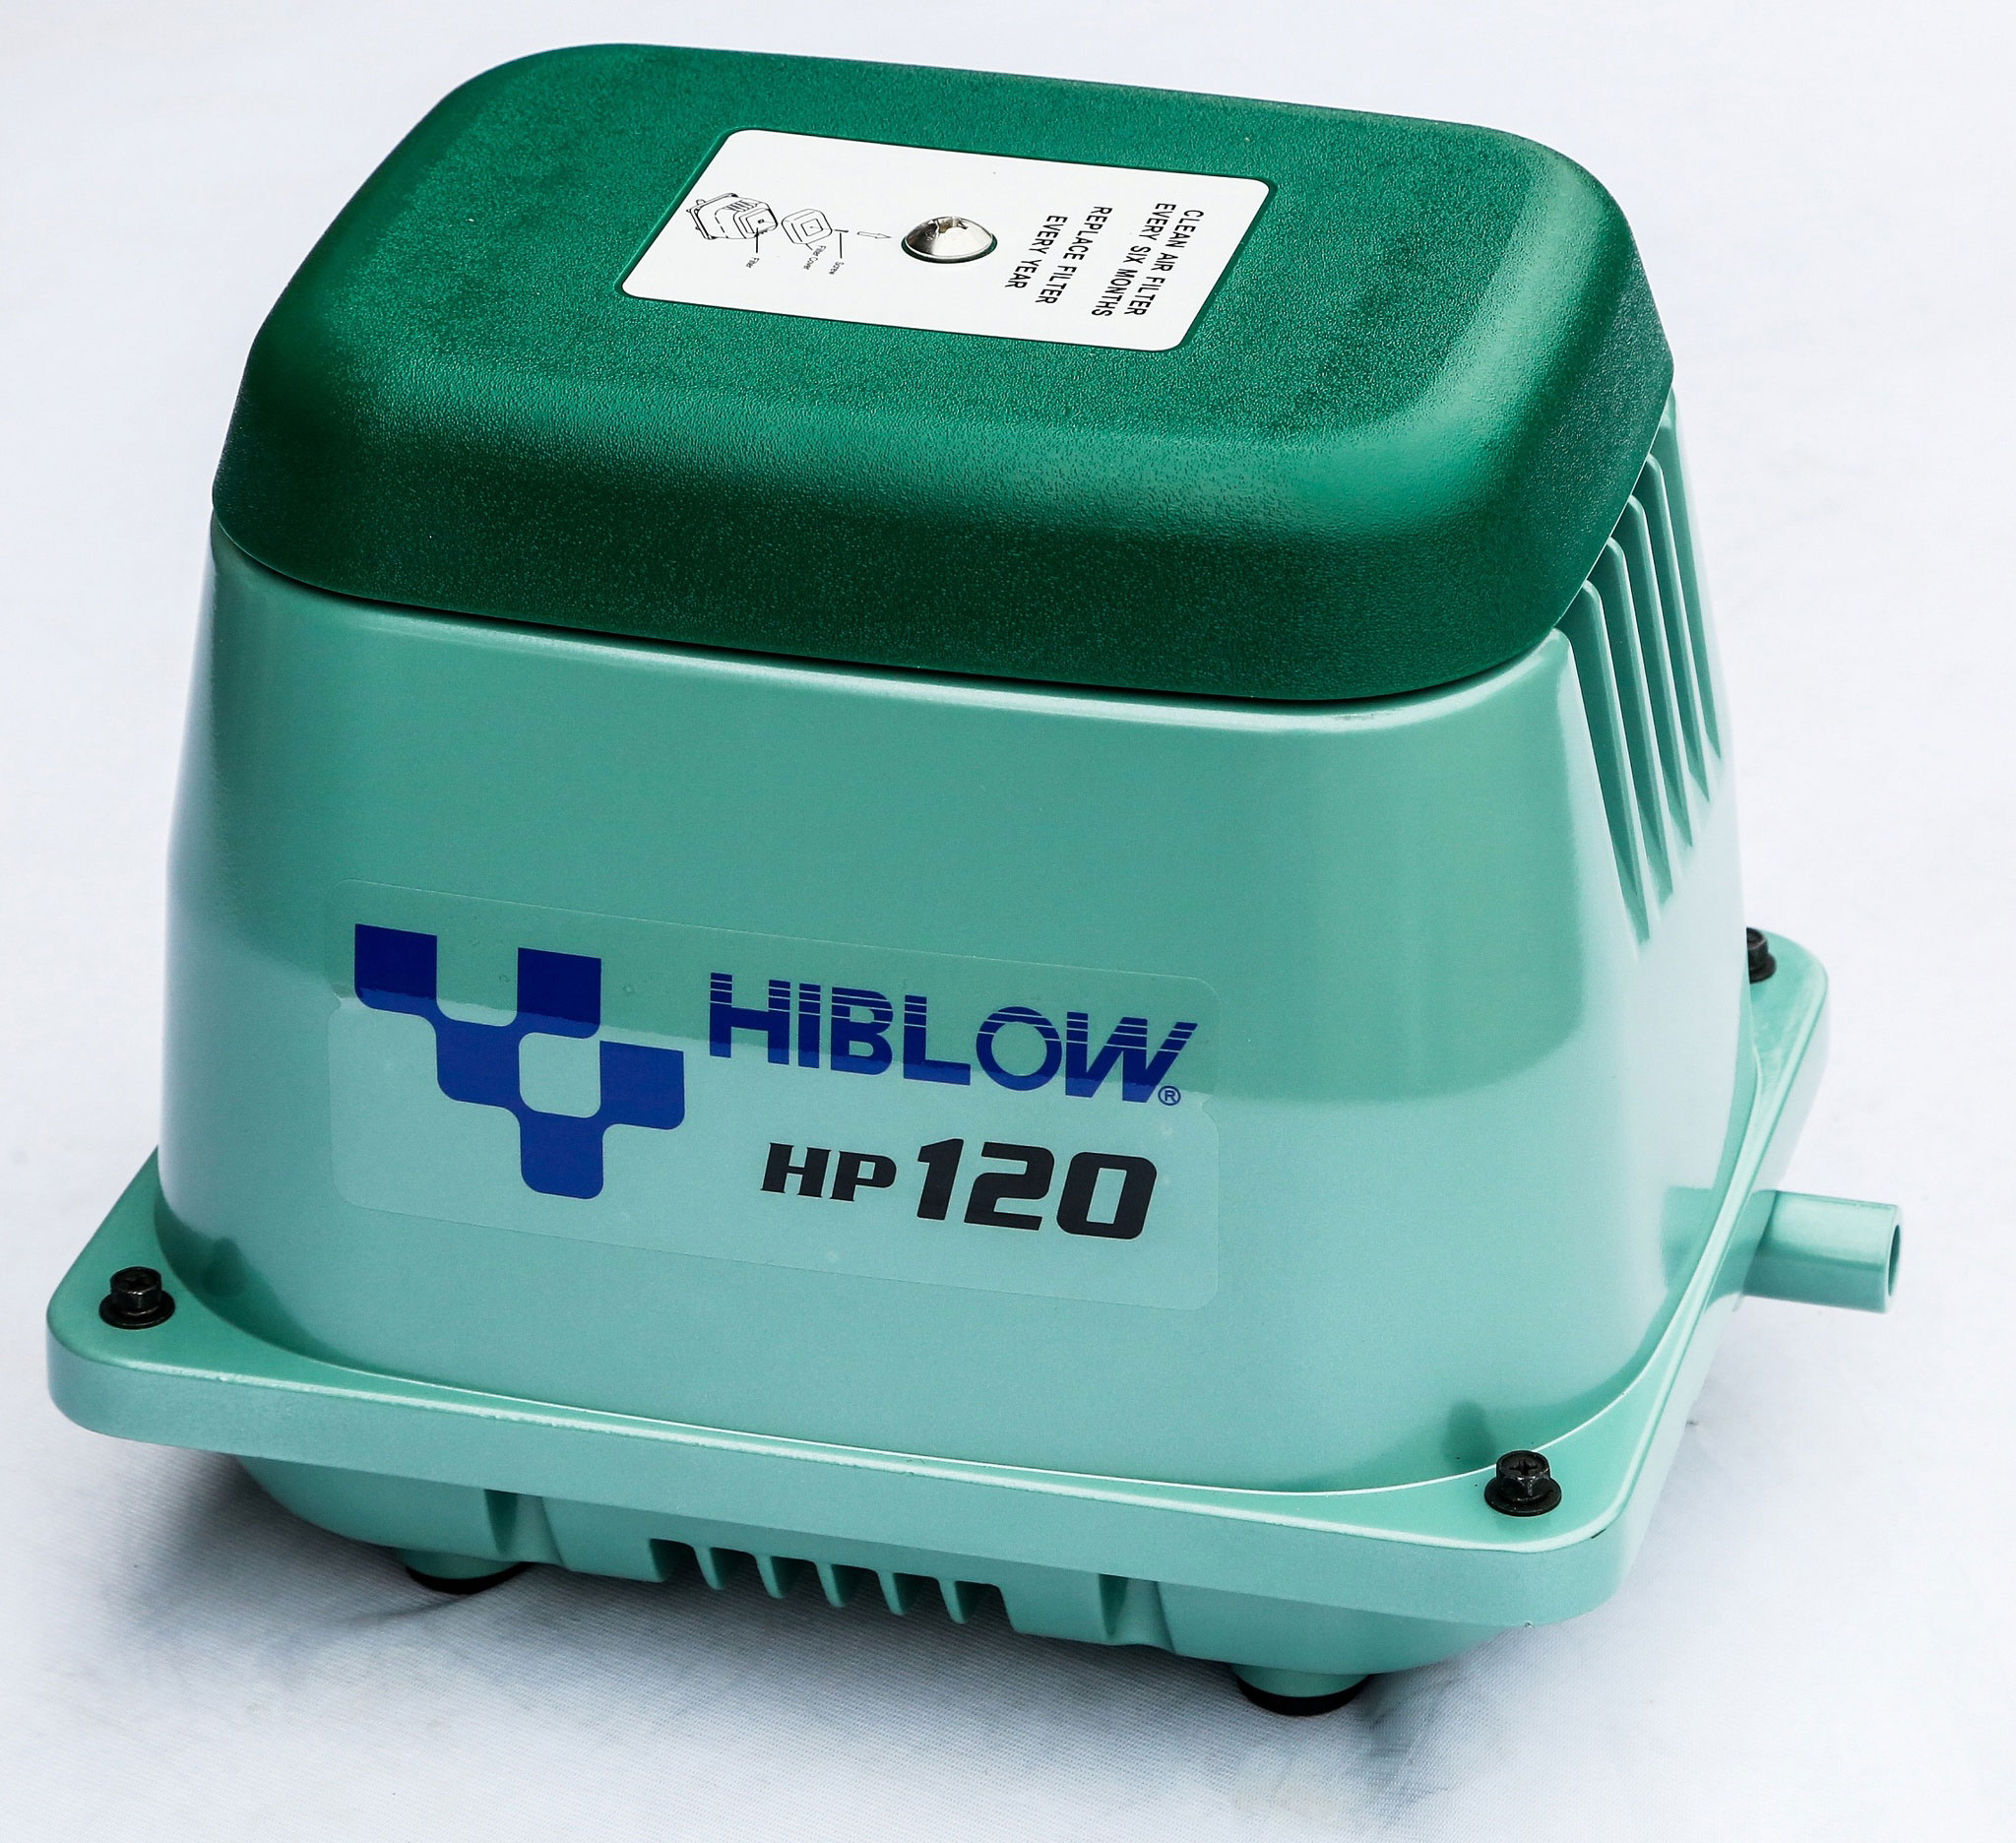 hiblow hp 120